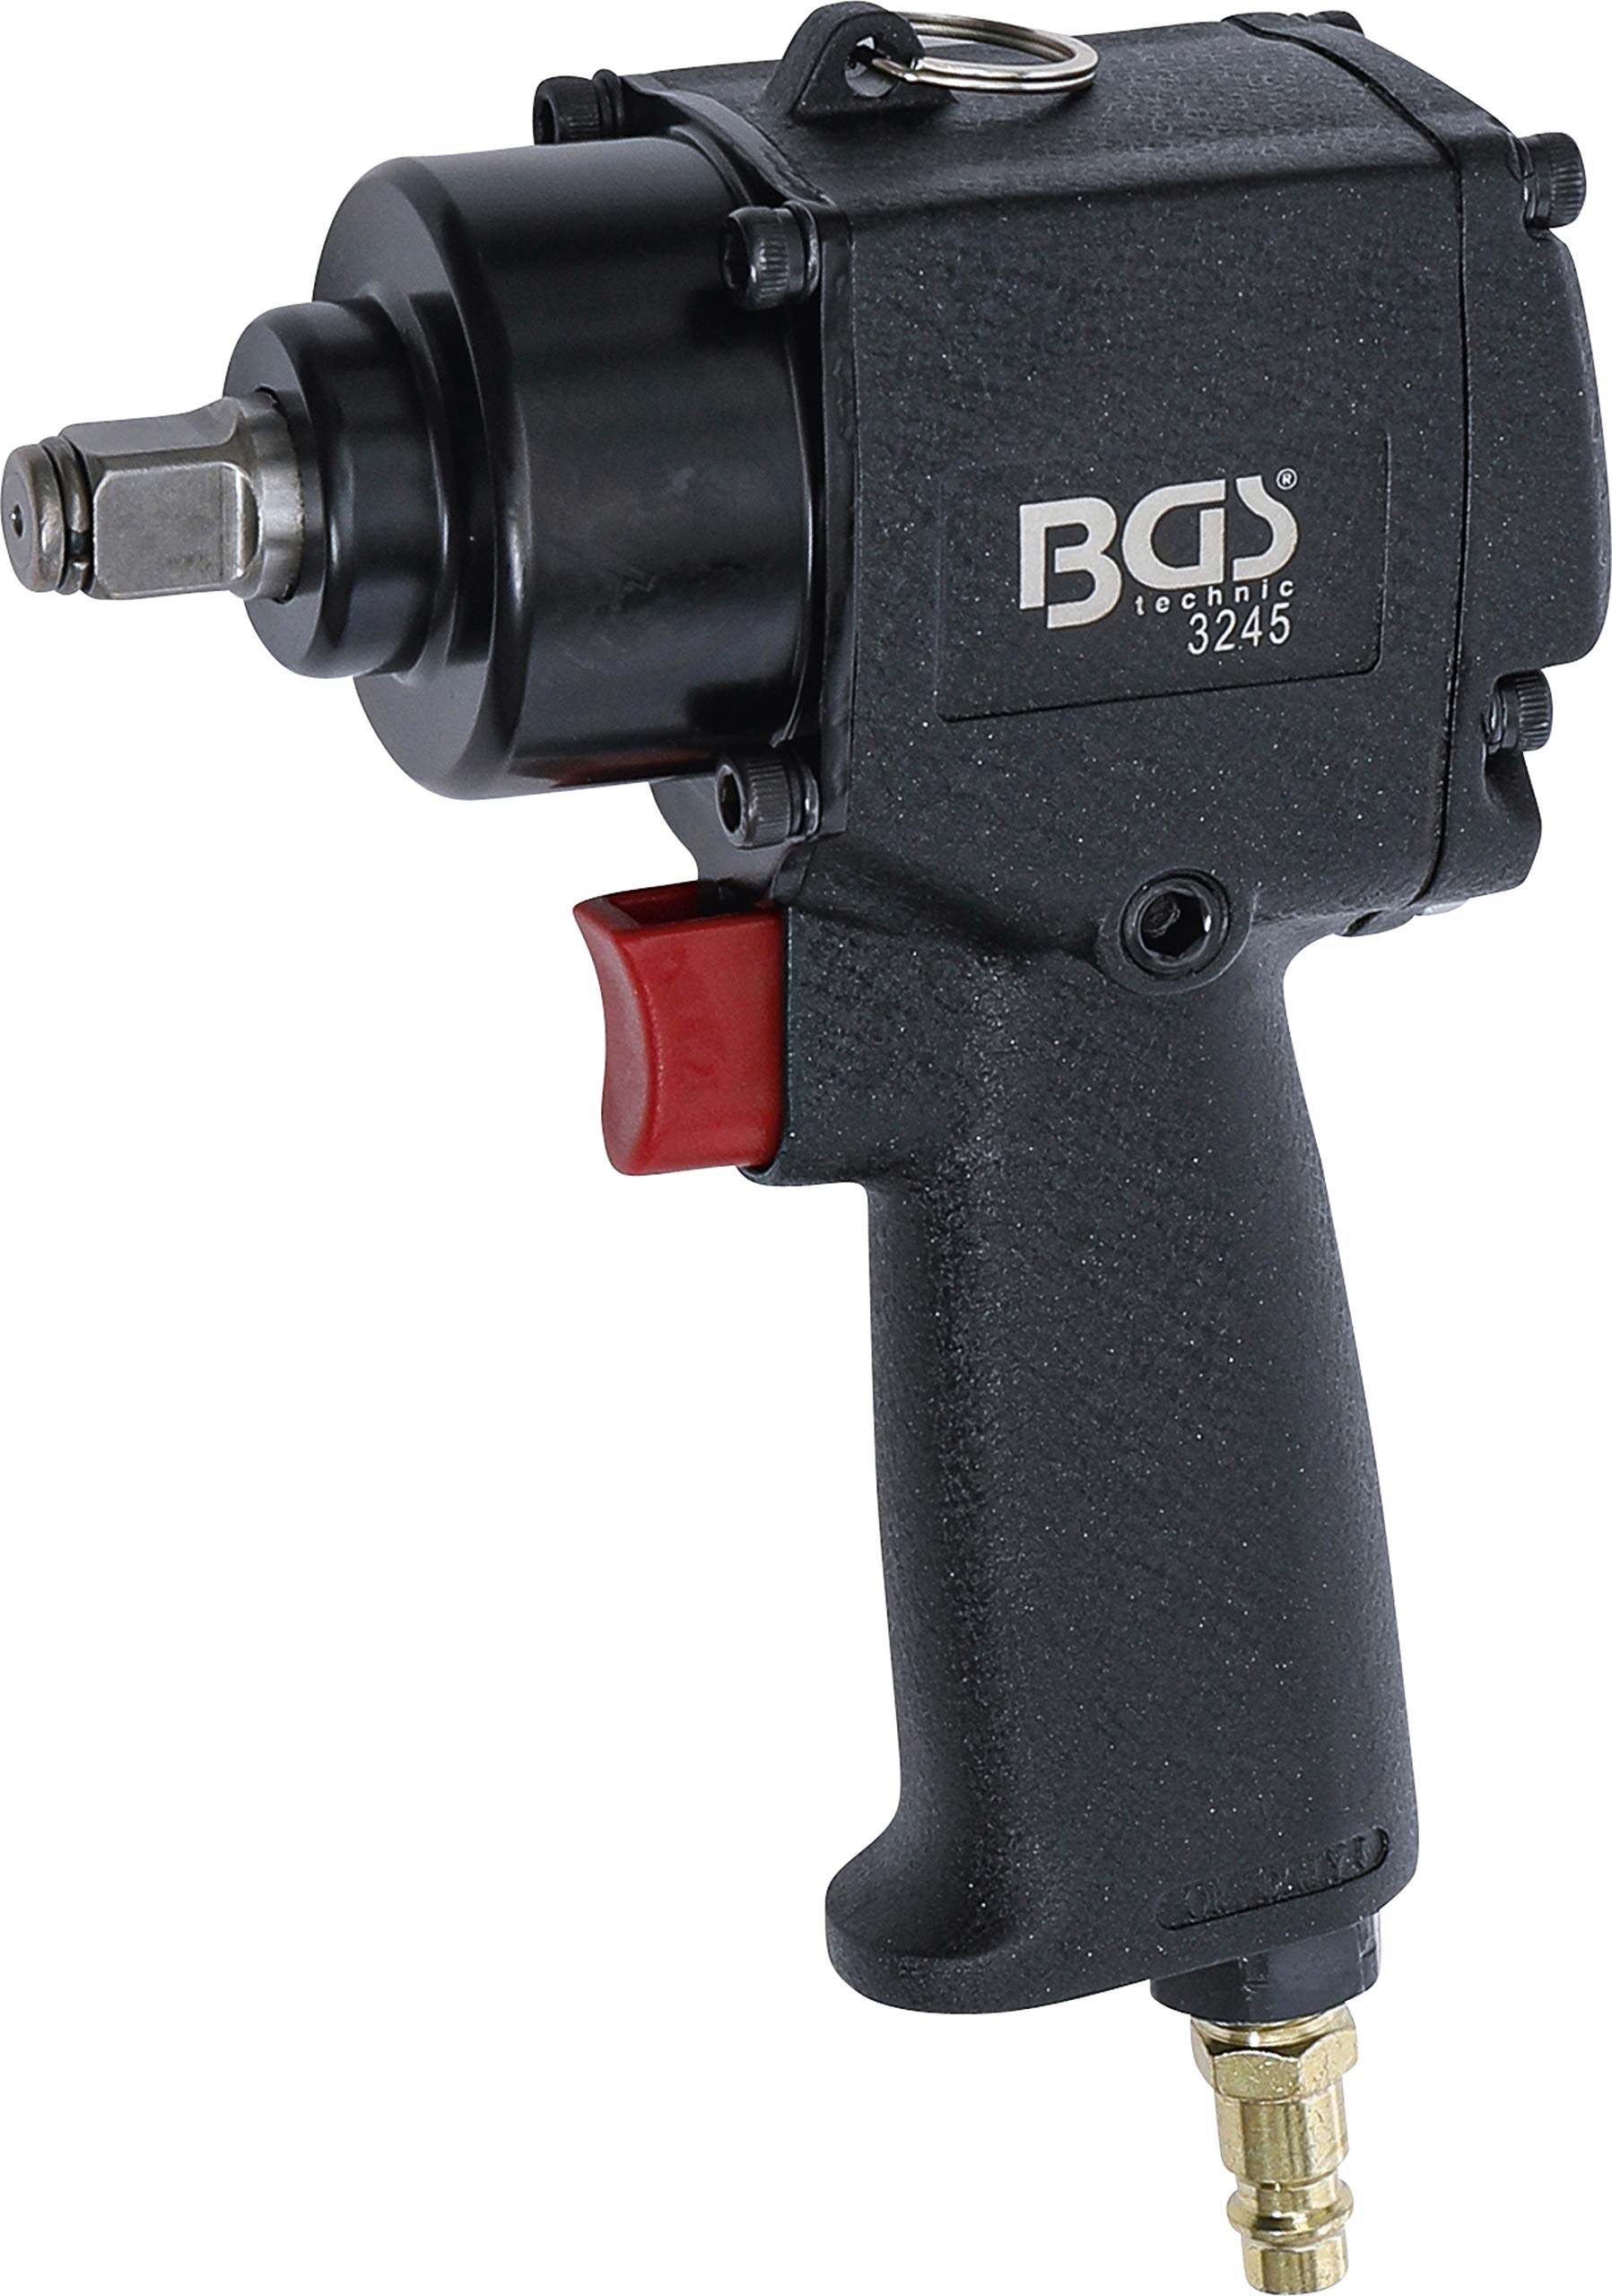 BGS 3245 | Druckluft-Schlagschrauber | 12,5 mm (1/2") | 678 Nm von BGS